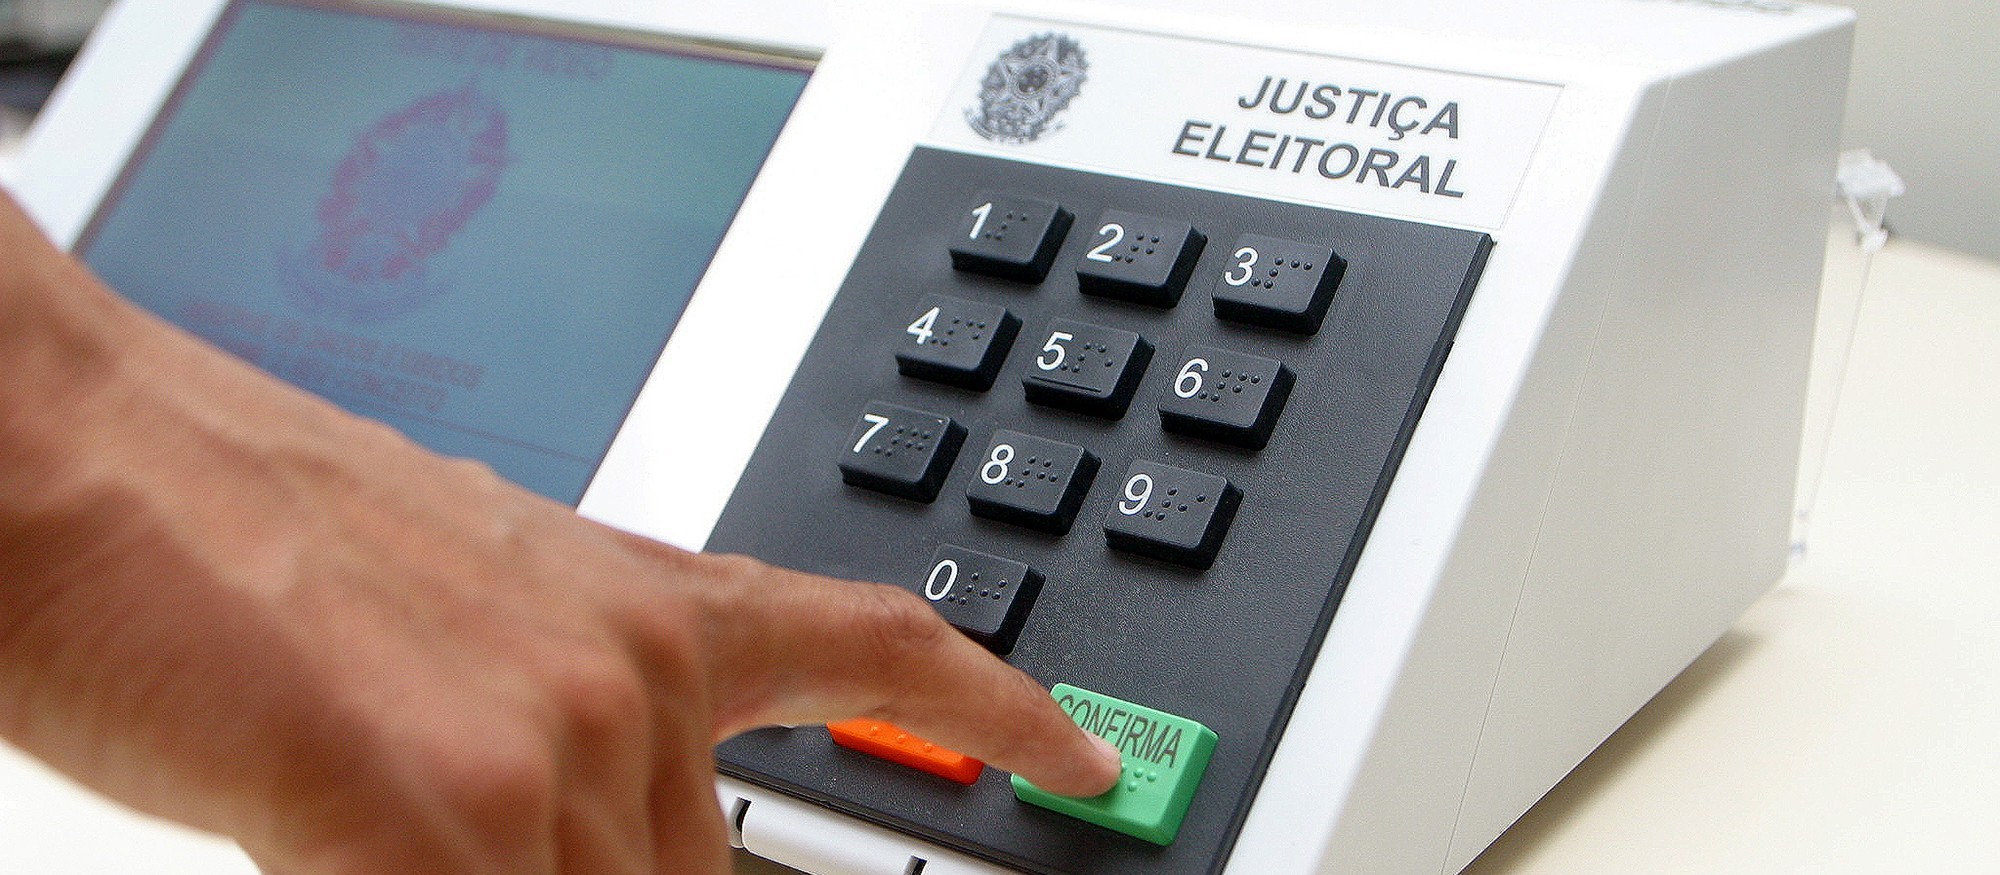 Cinco urnas eletrônicas foram substituídas em Maringá